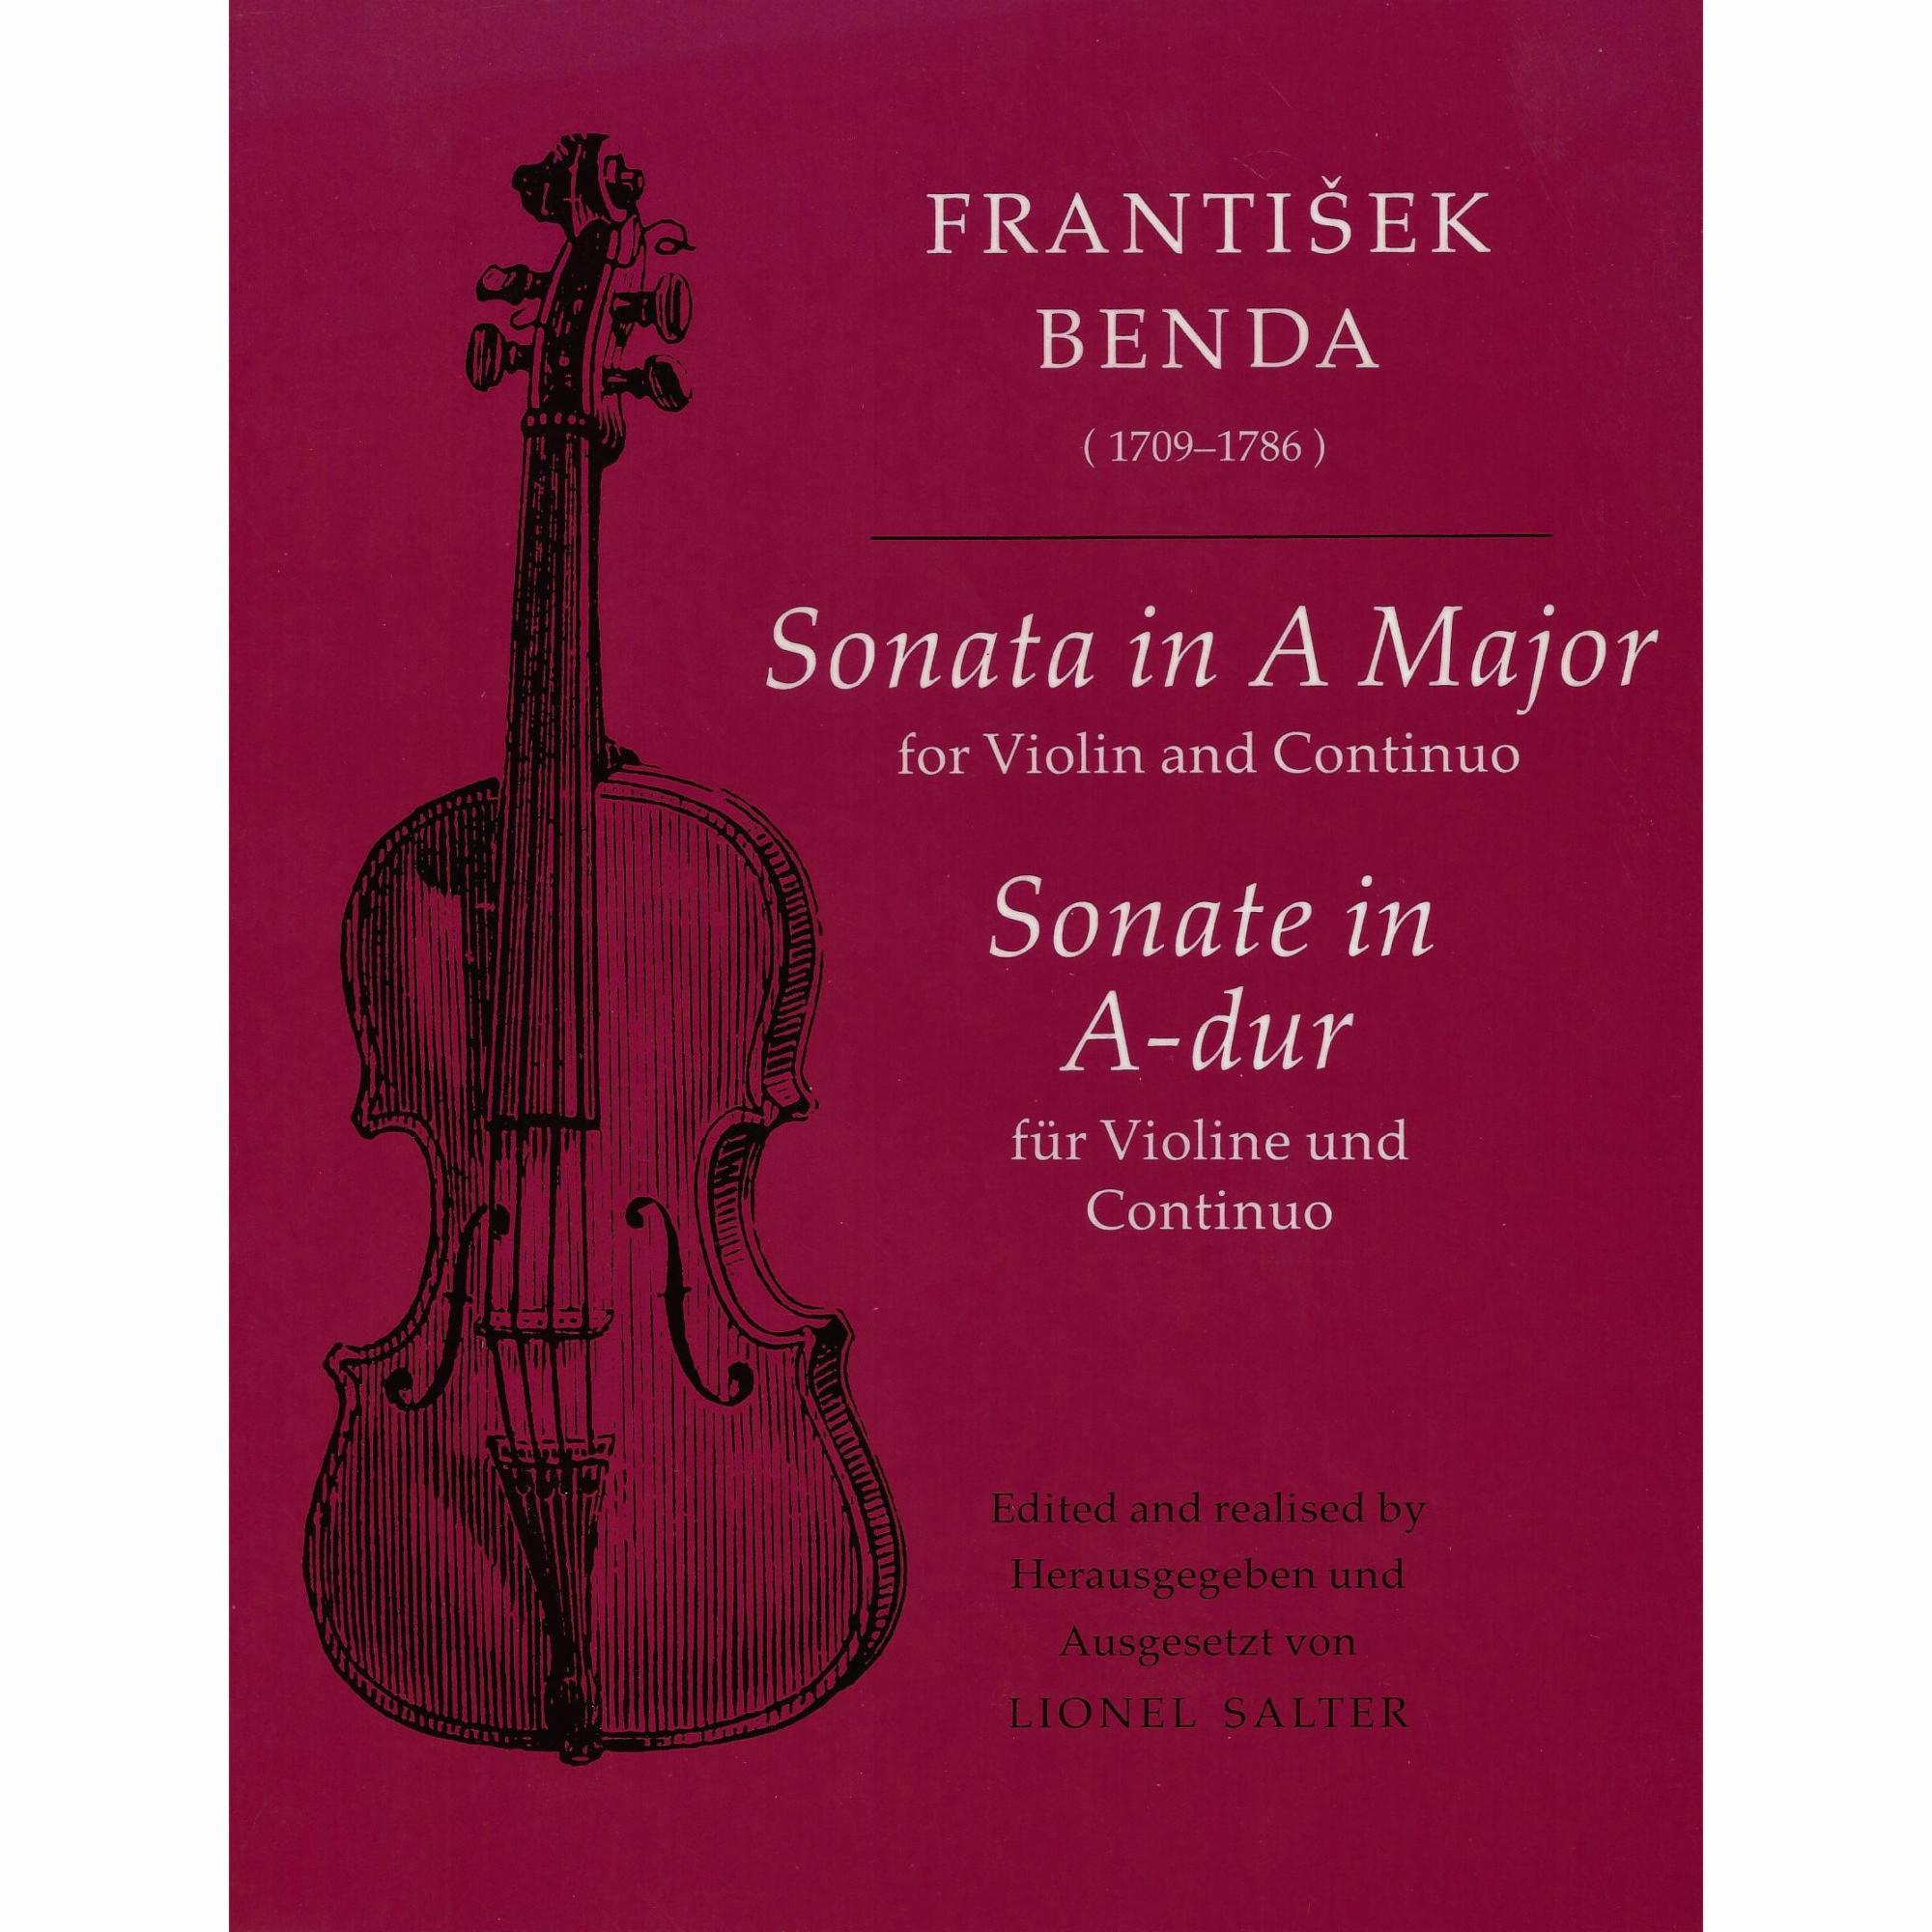 Benda -- Sonata in A Major for Violin and Basso Continuo